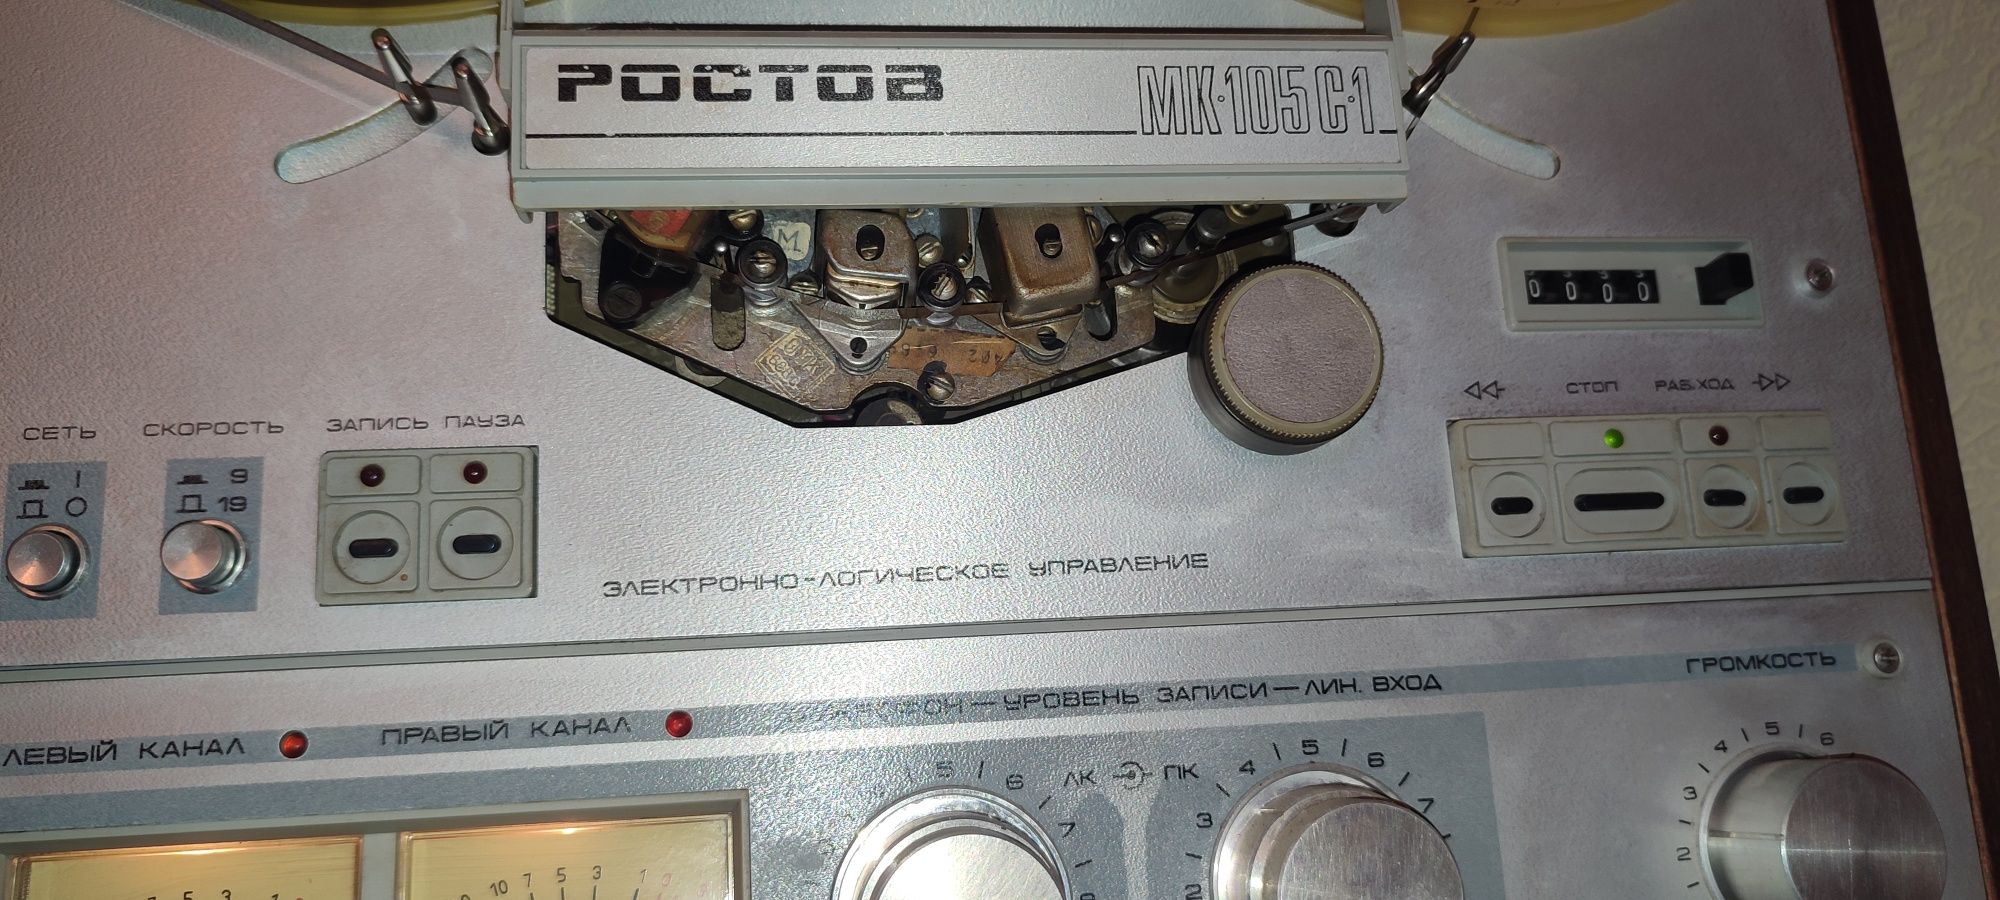 Ростов  МК 105 С1